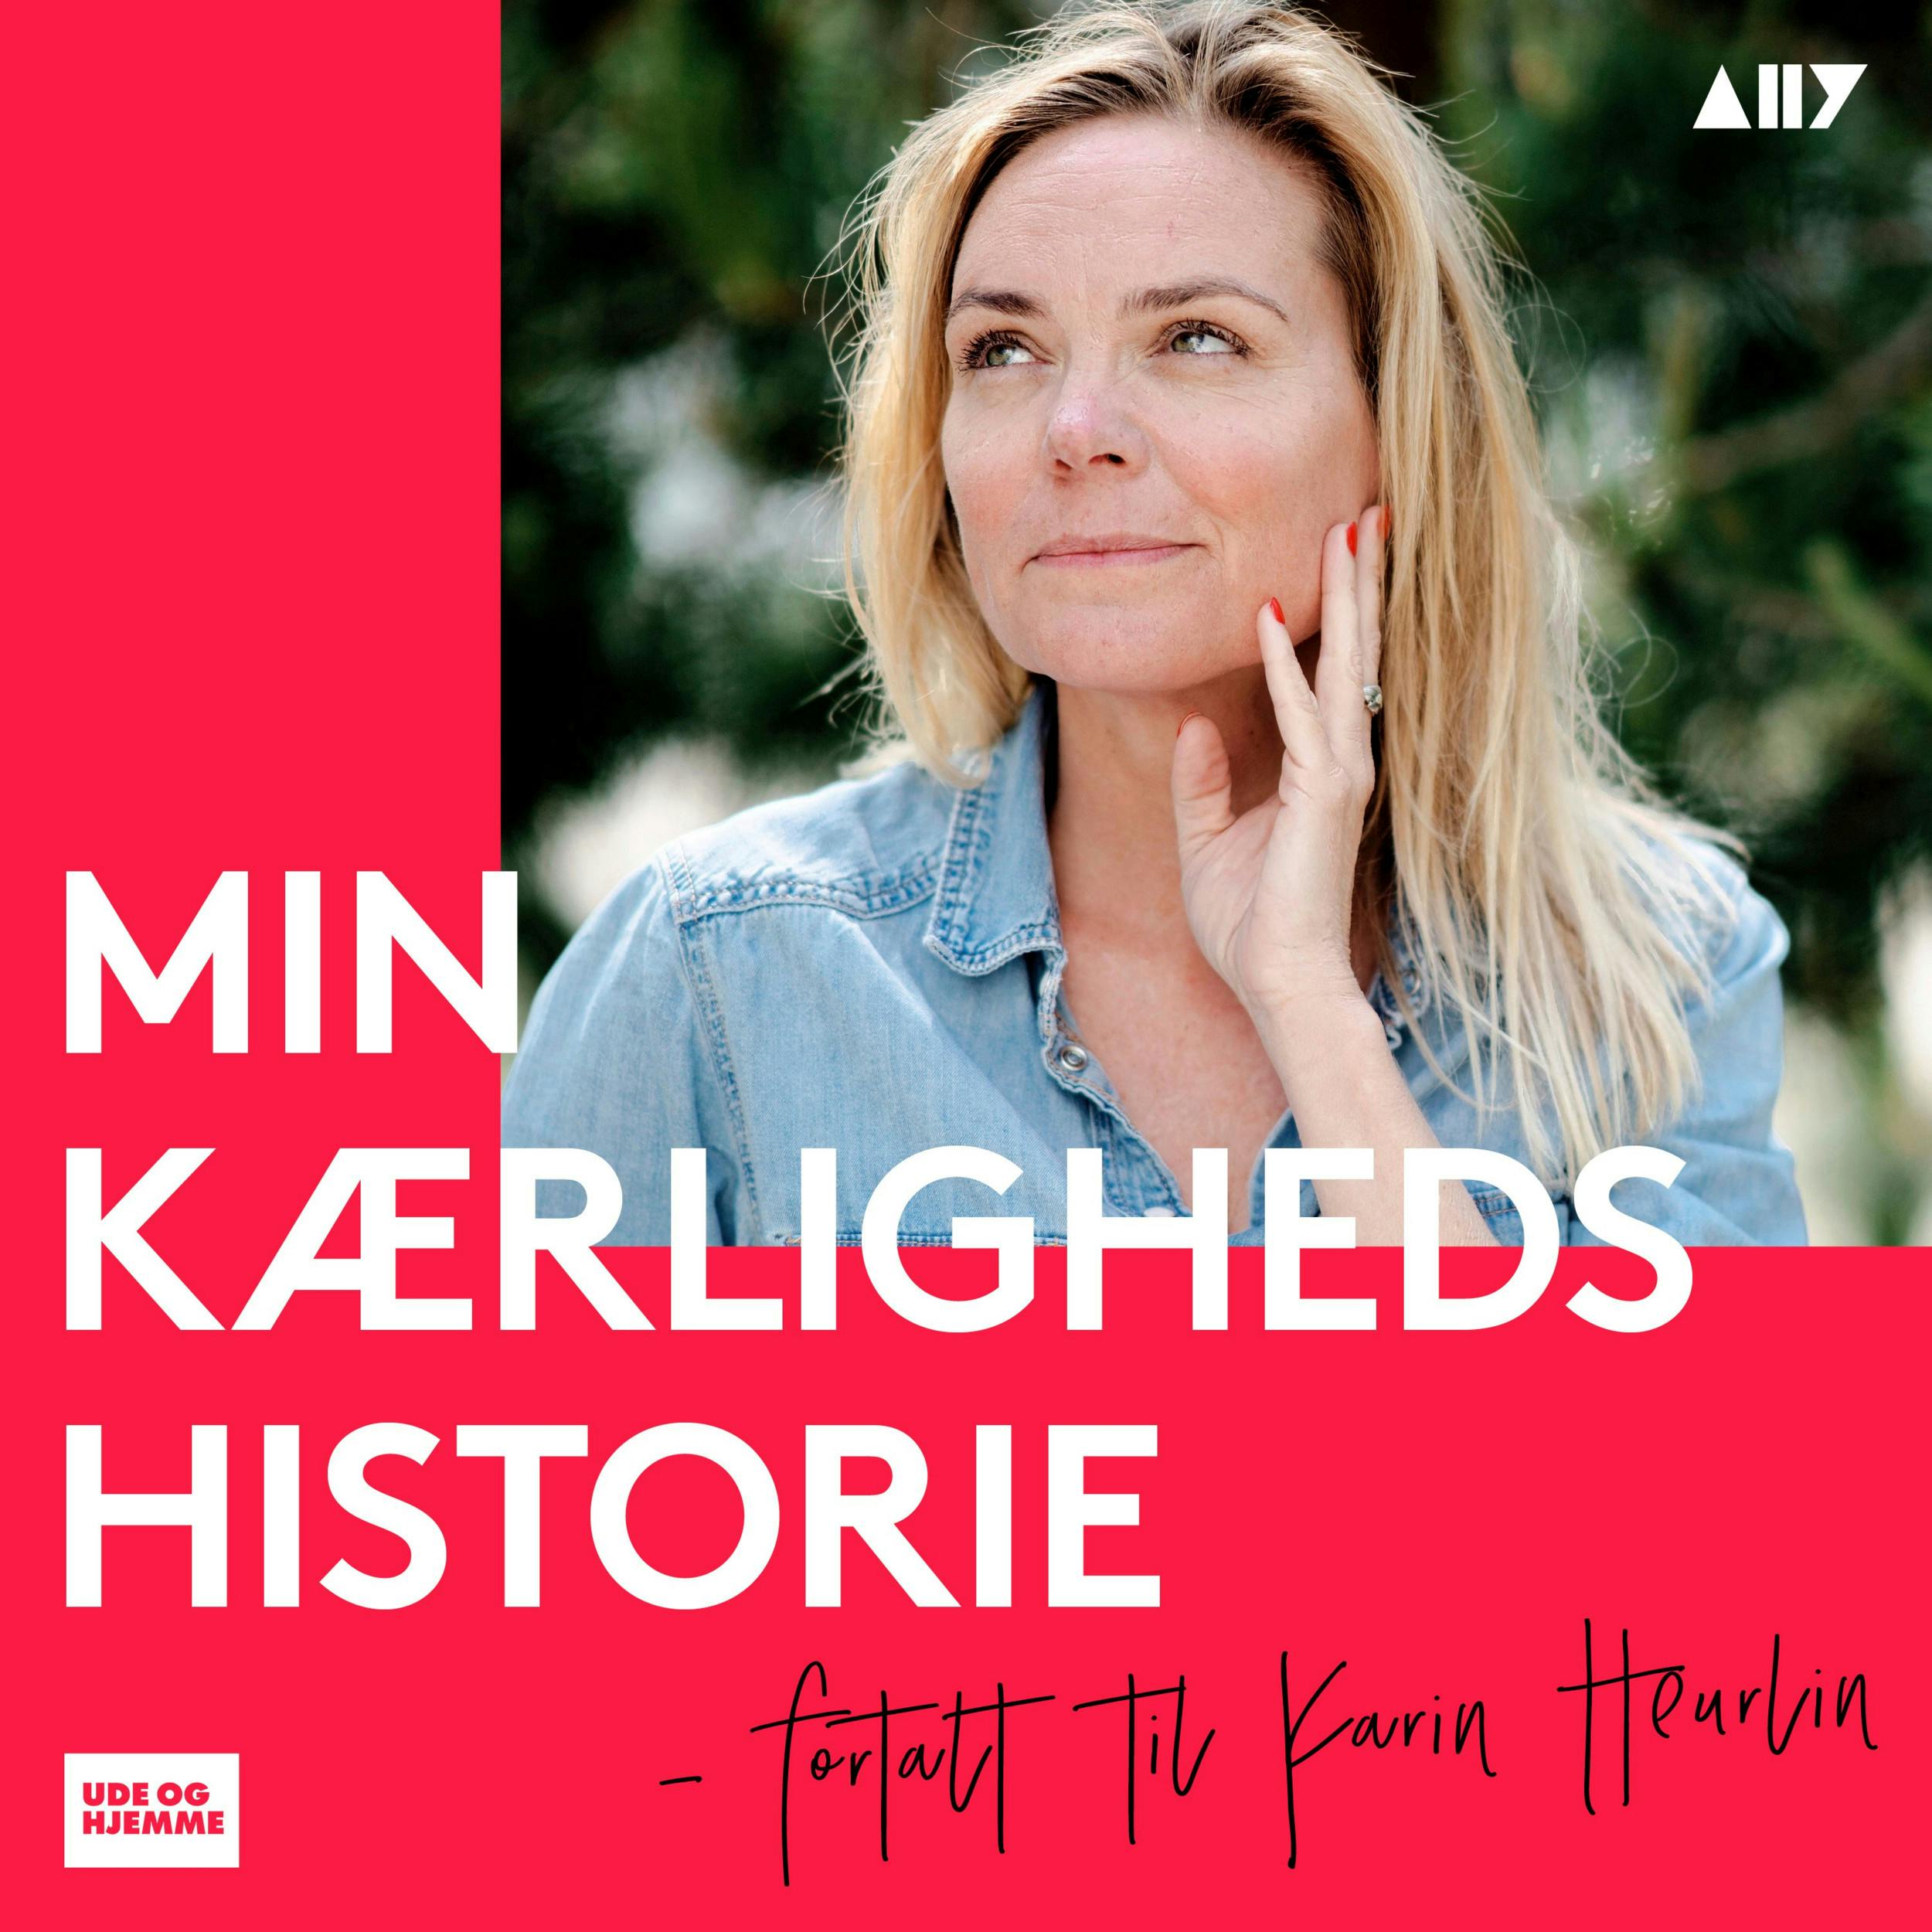 Joan Ørting medvirker i podcasten ”Min kærlighedshistorie”, hvor forfatter og journalist Karin Heurlin hver uge besøger et nyt menneske med en særlig kærlighedshistorie.